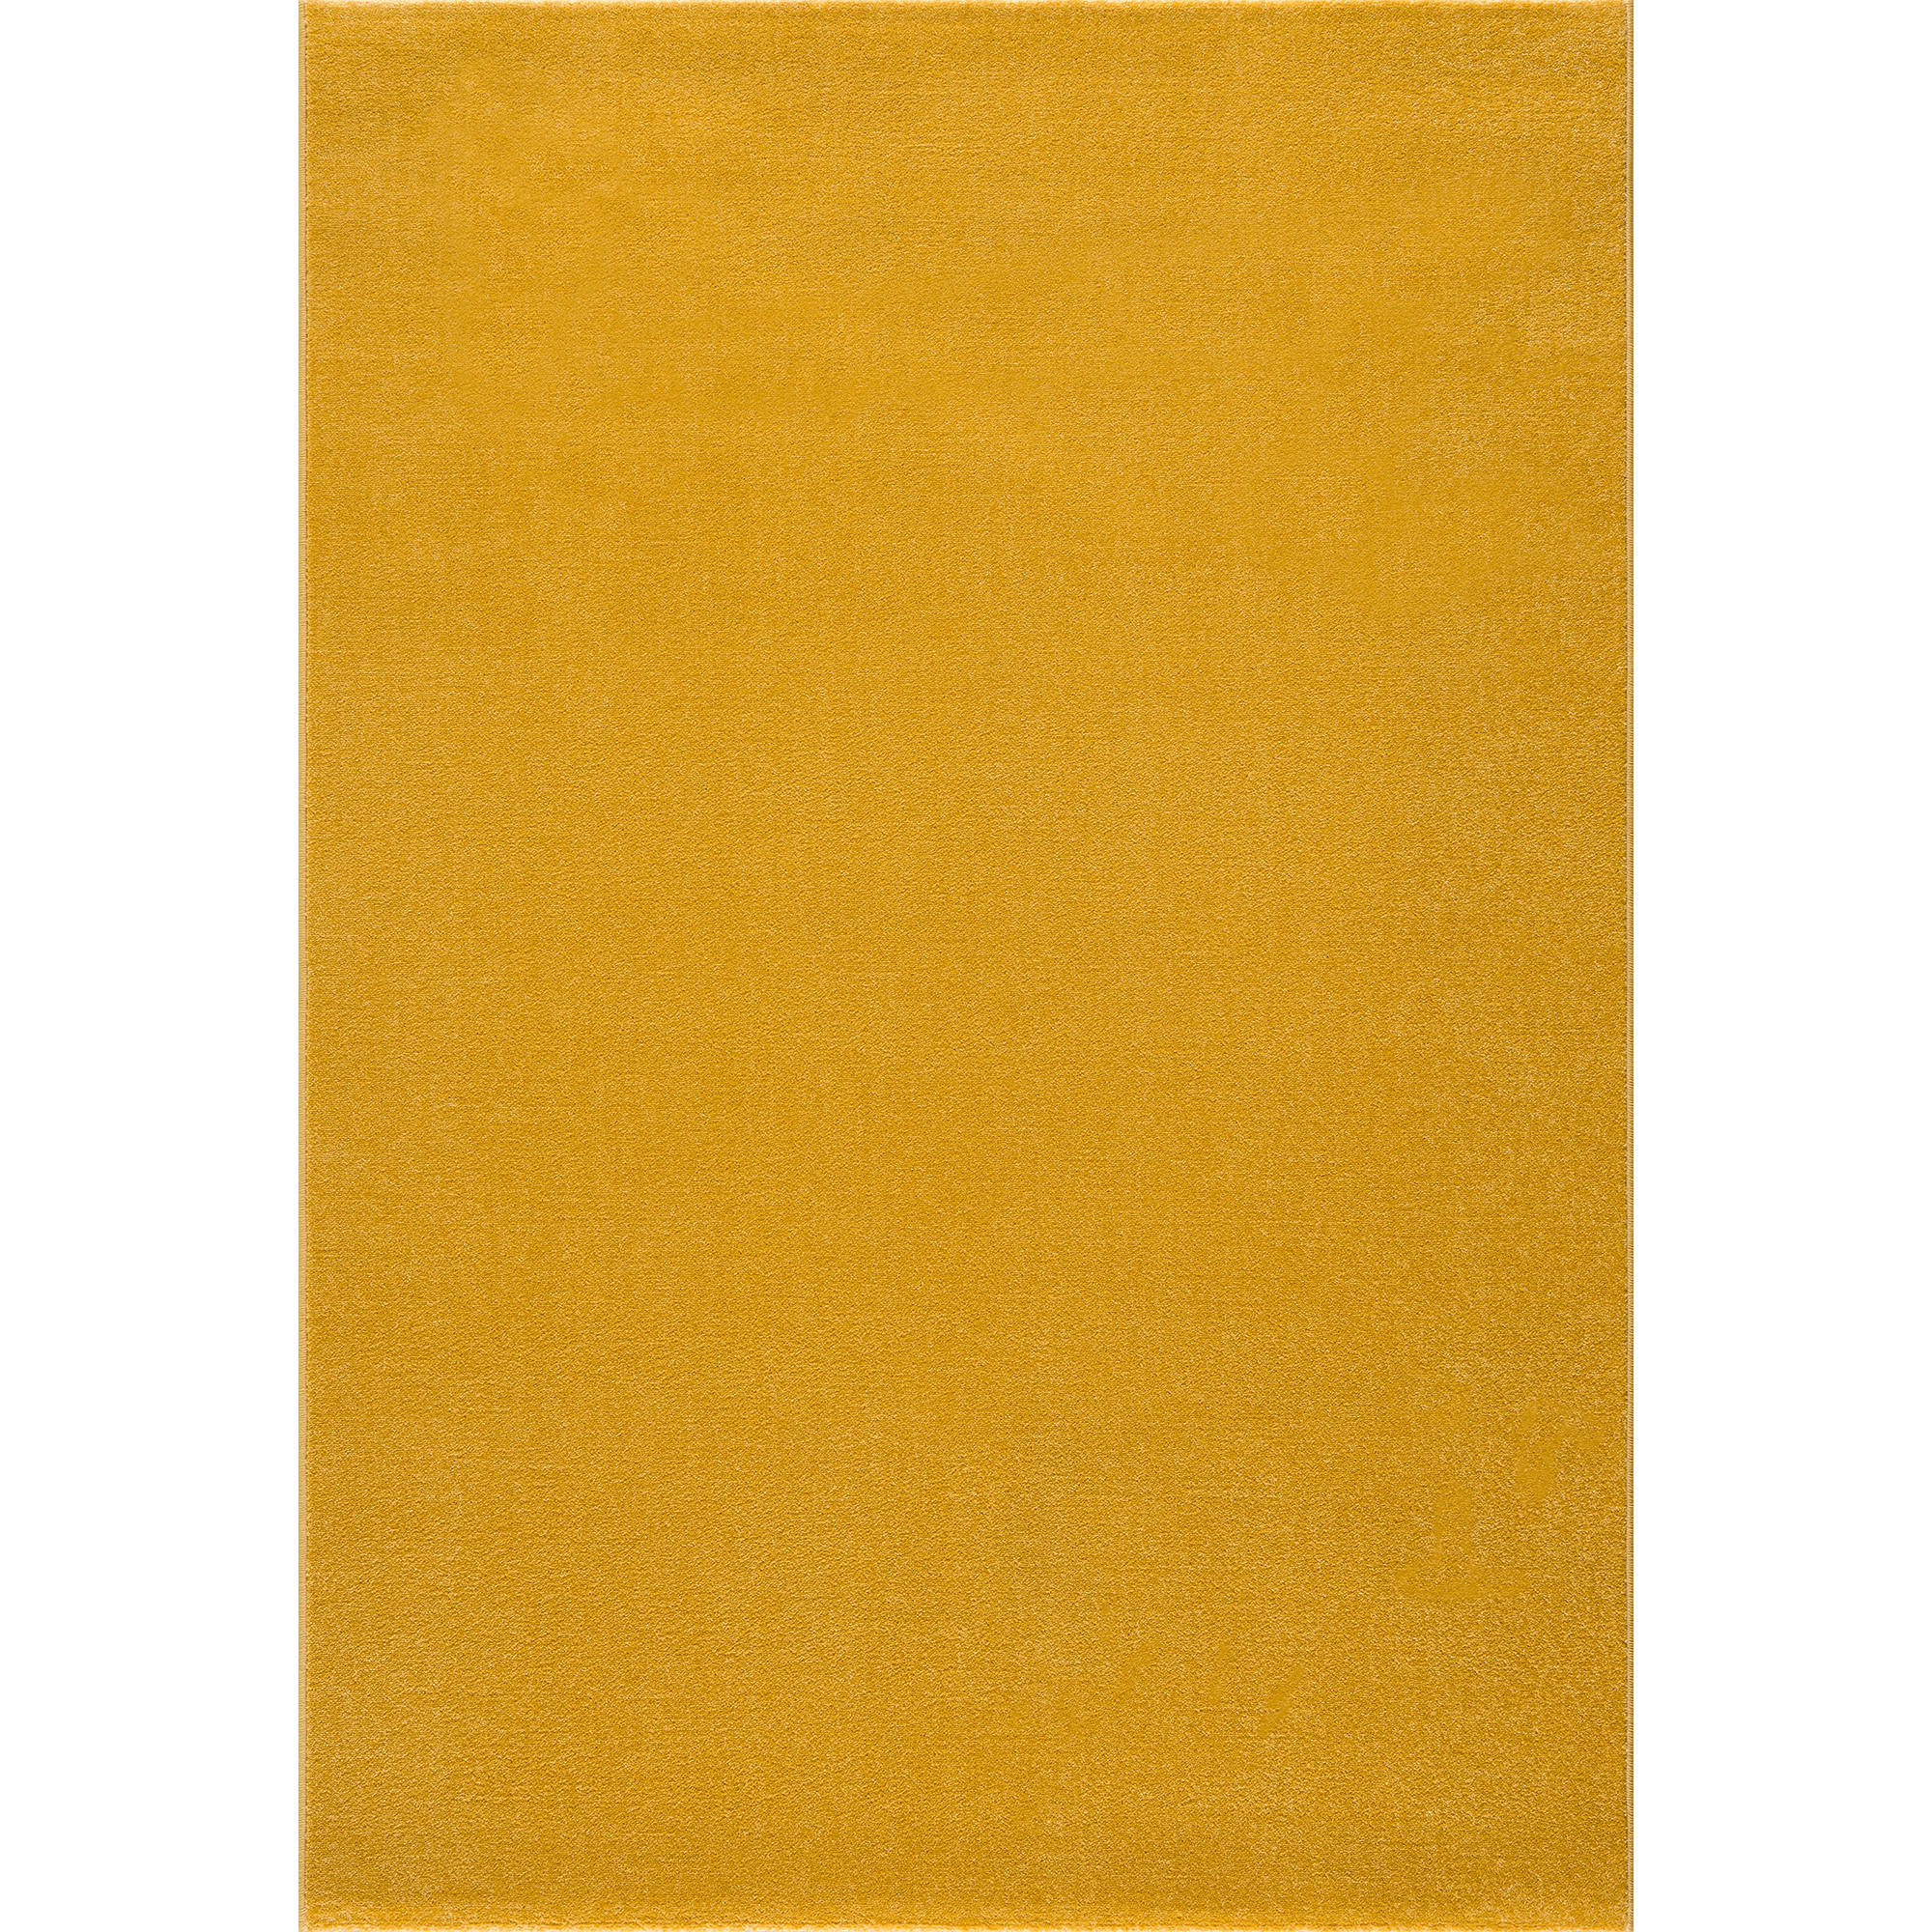 WEBTEPPICH 60/110 cm Uni  - Gelb, LIFESTYLE, Kunststoff/Textil (60/110cm) - Novel